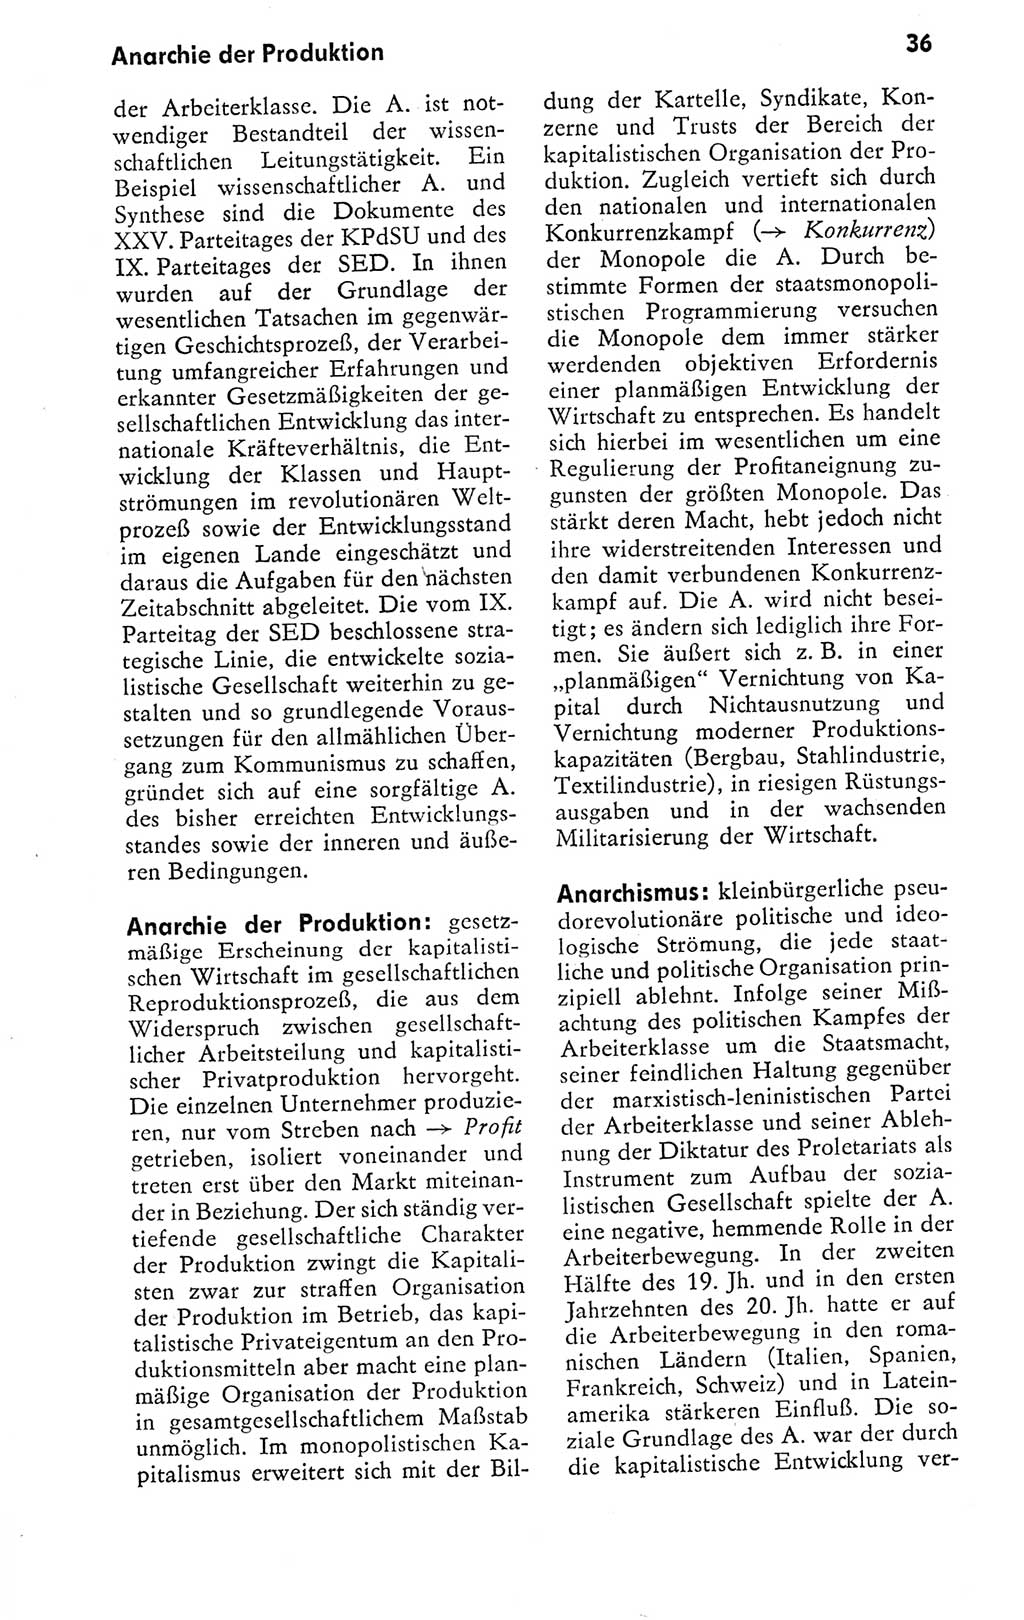 Kleines politisches Wörterbuch [Deutsche Demokratische Republik (DDR)] 1978, Seite 36 (Kl. pol. Wb. DDR 1978, S. 36)